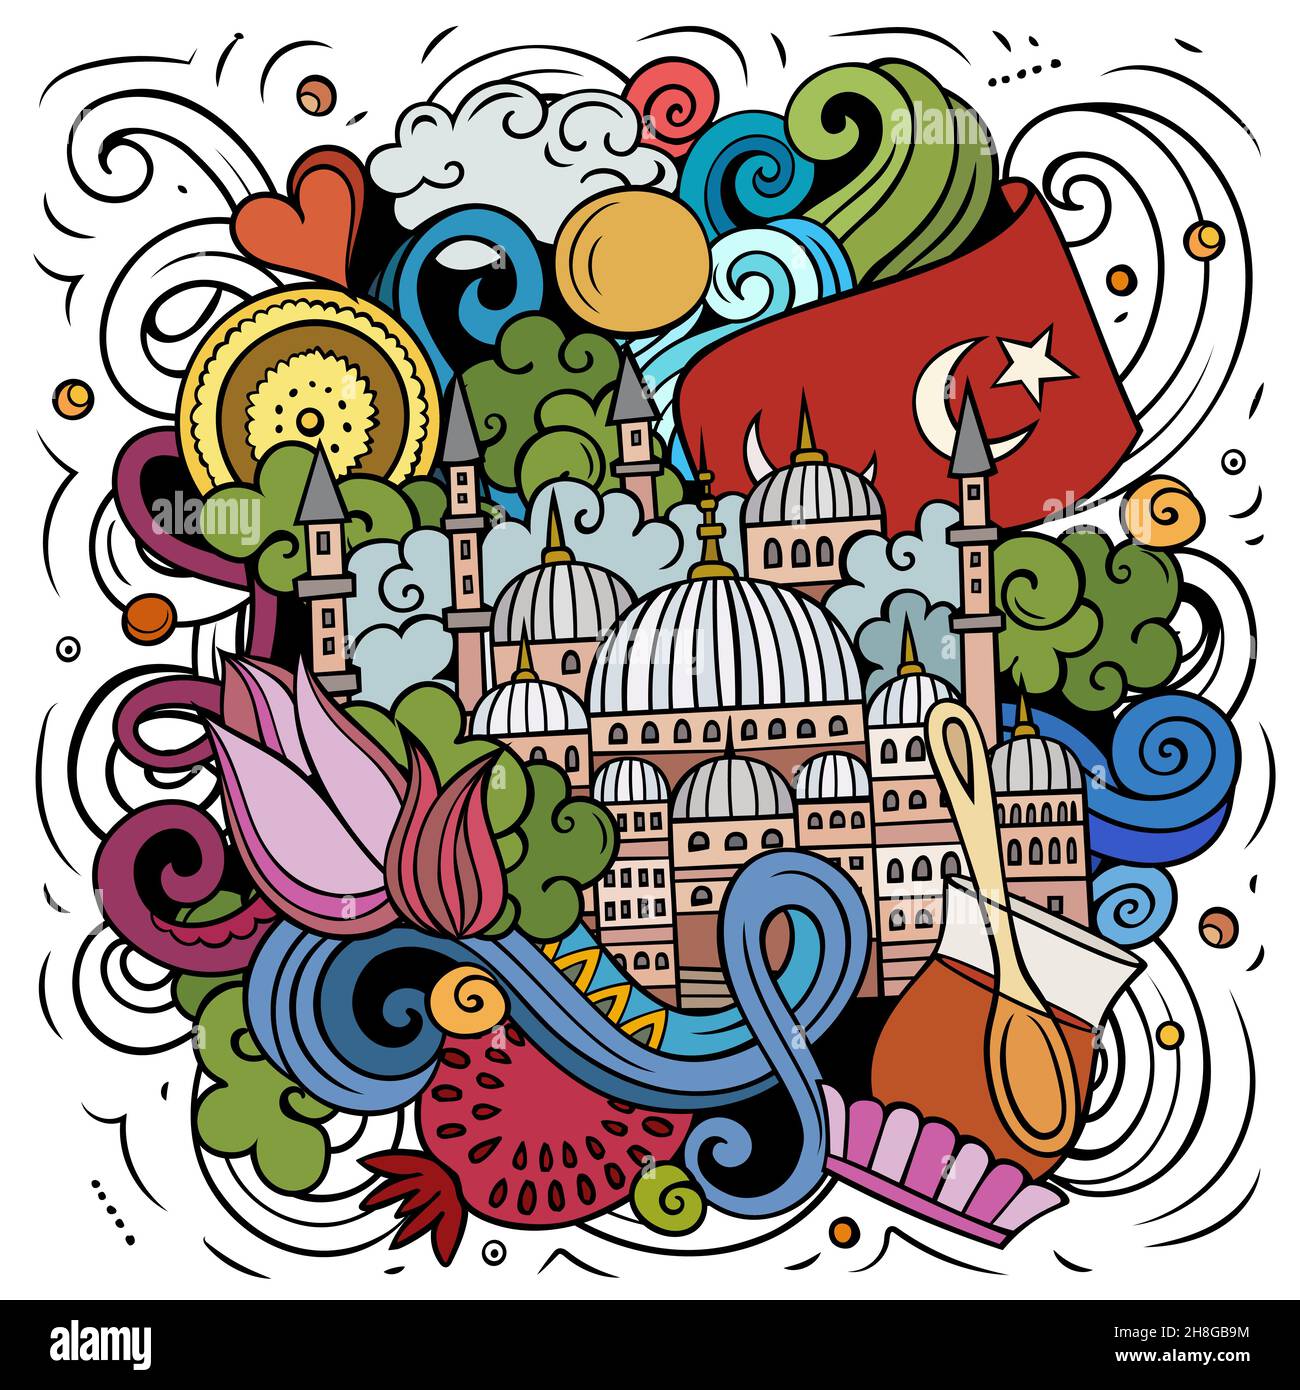 Istanbul Cartoon Vektor Doodle Illustration. Farbenfrohe, detailreiche Komposition mit vielen türkischen Objekten und Symbolen. Stock Vektor